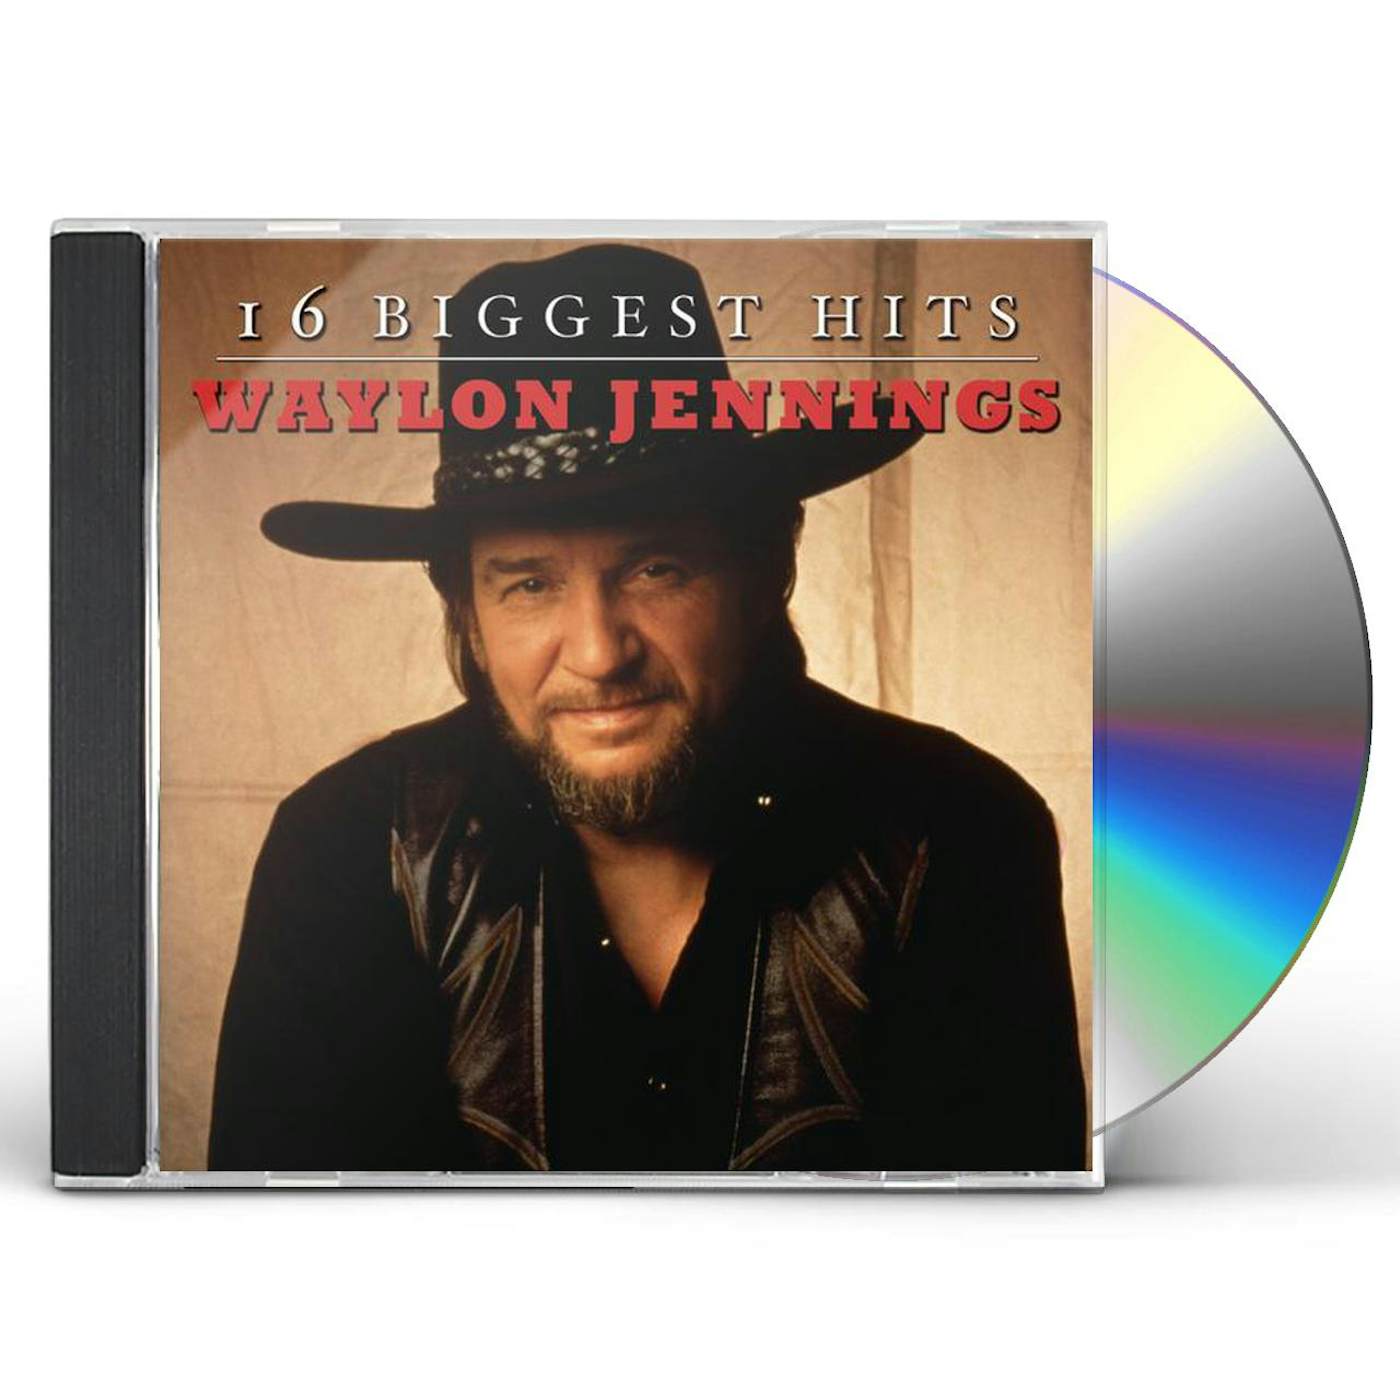 Waylon Jennings 16 BIGGEST HITS CD